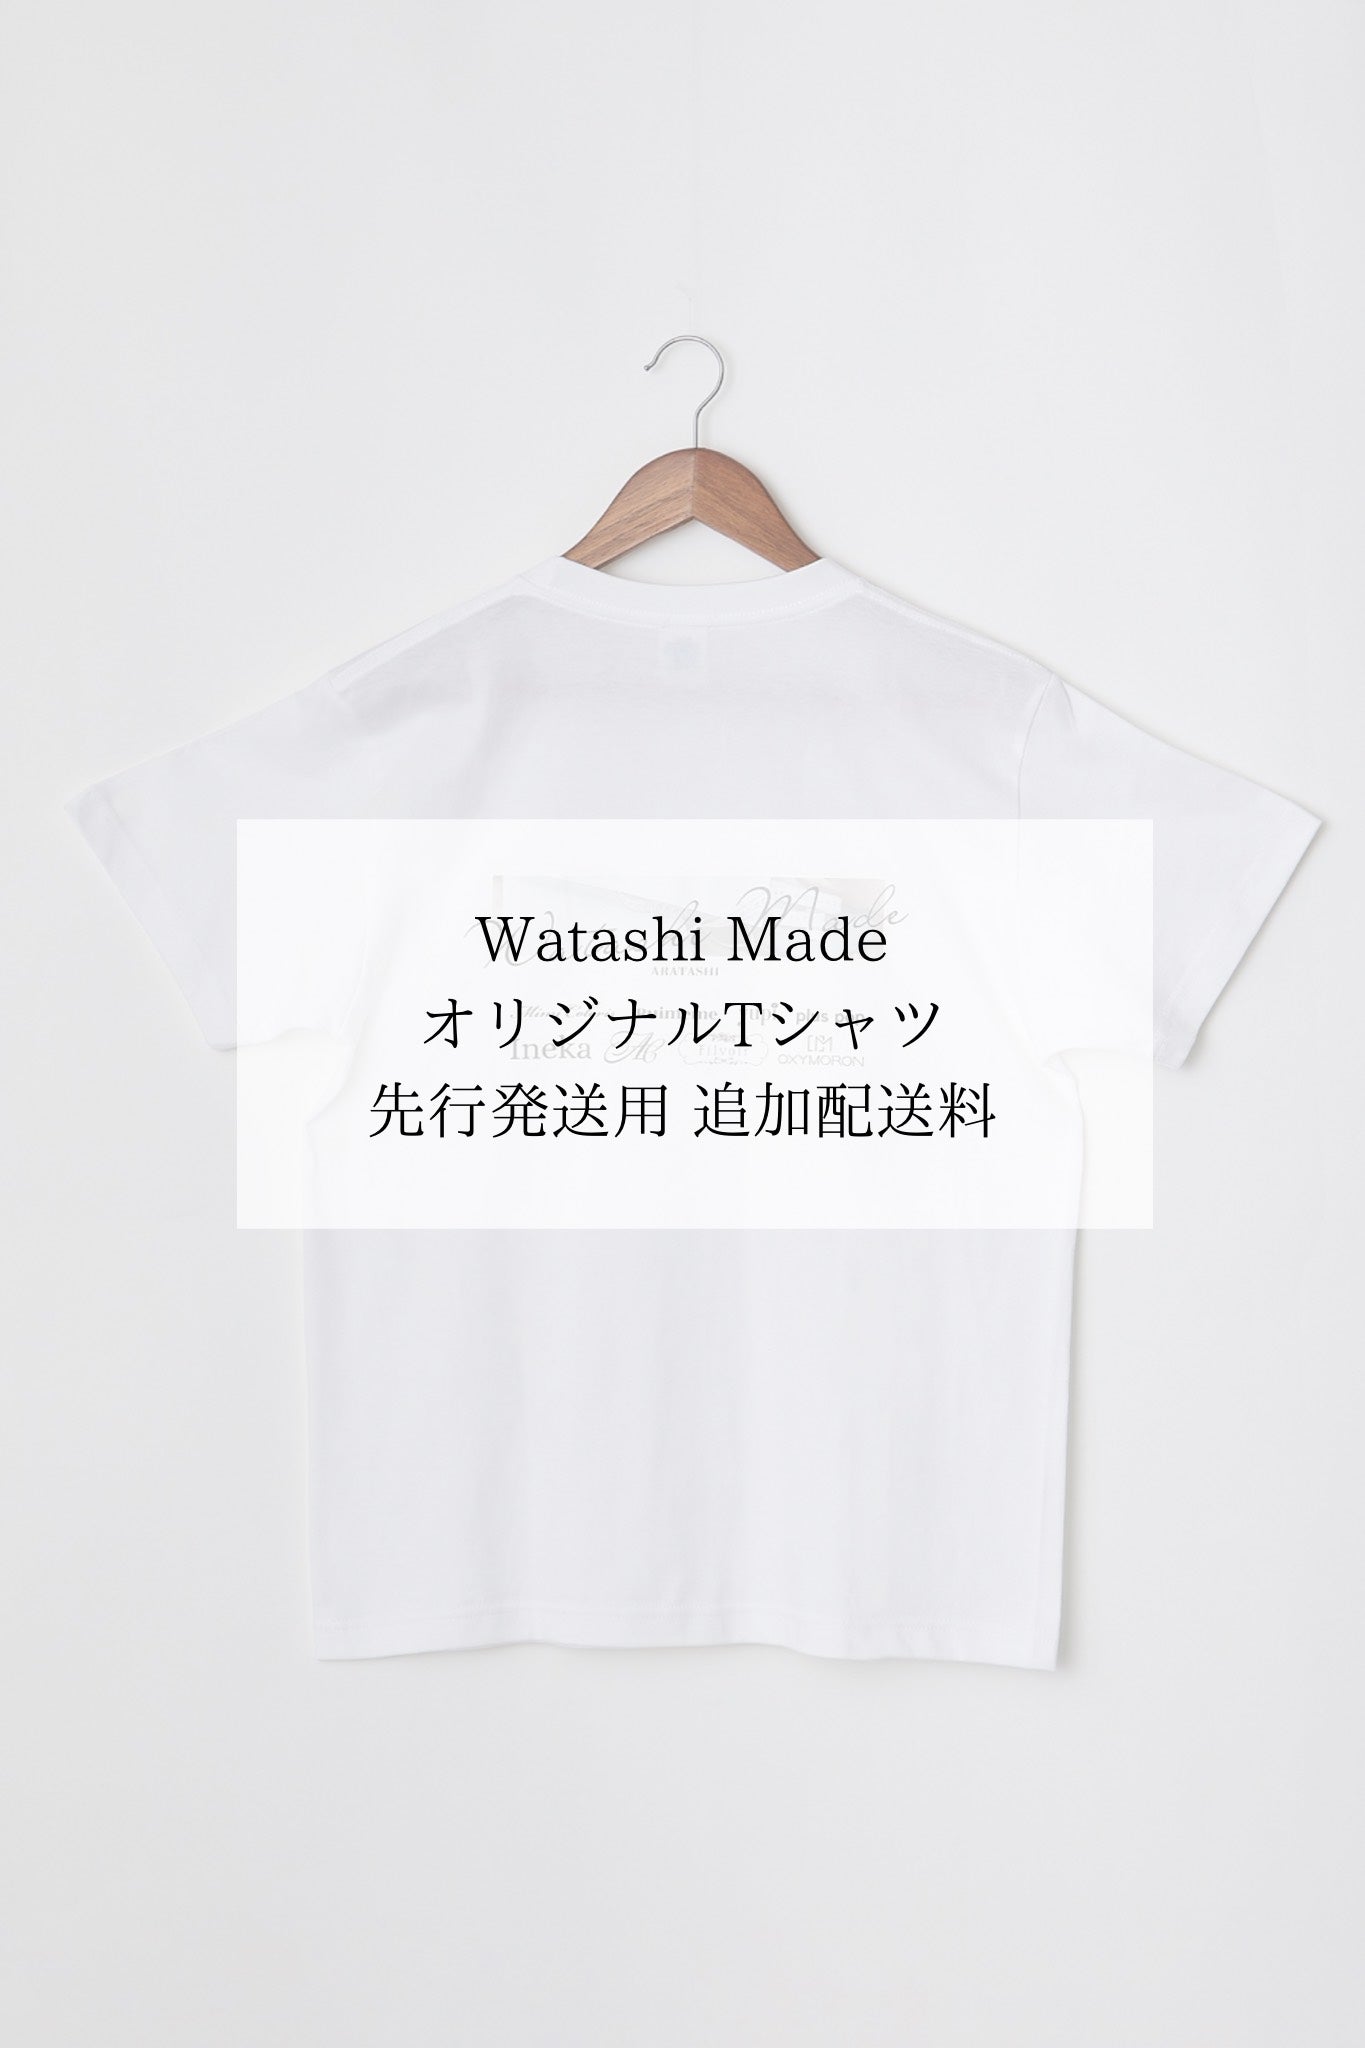 Watashi Made Original Tシャツ先行発送用配送料